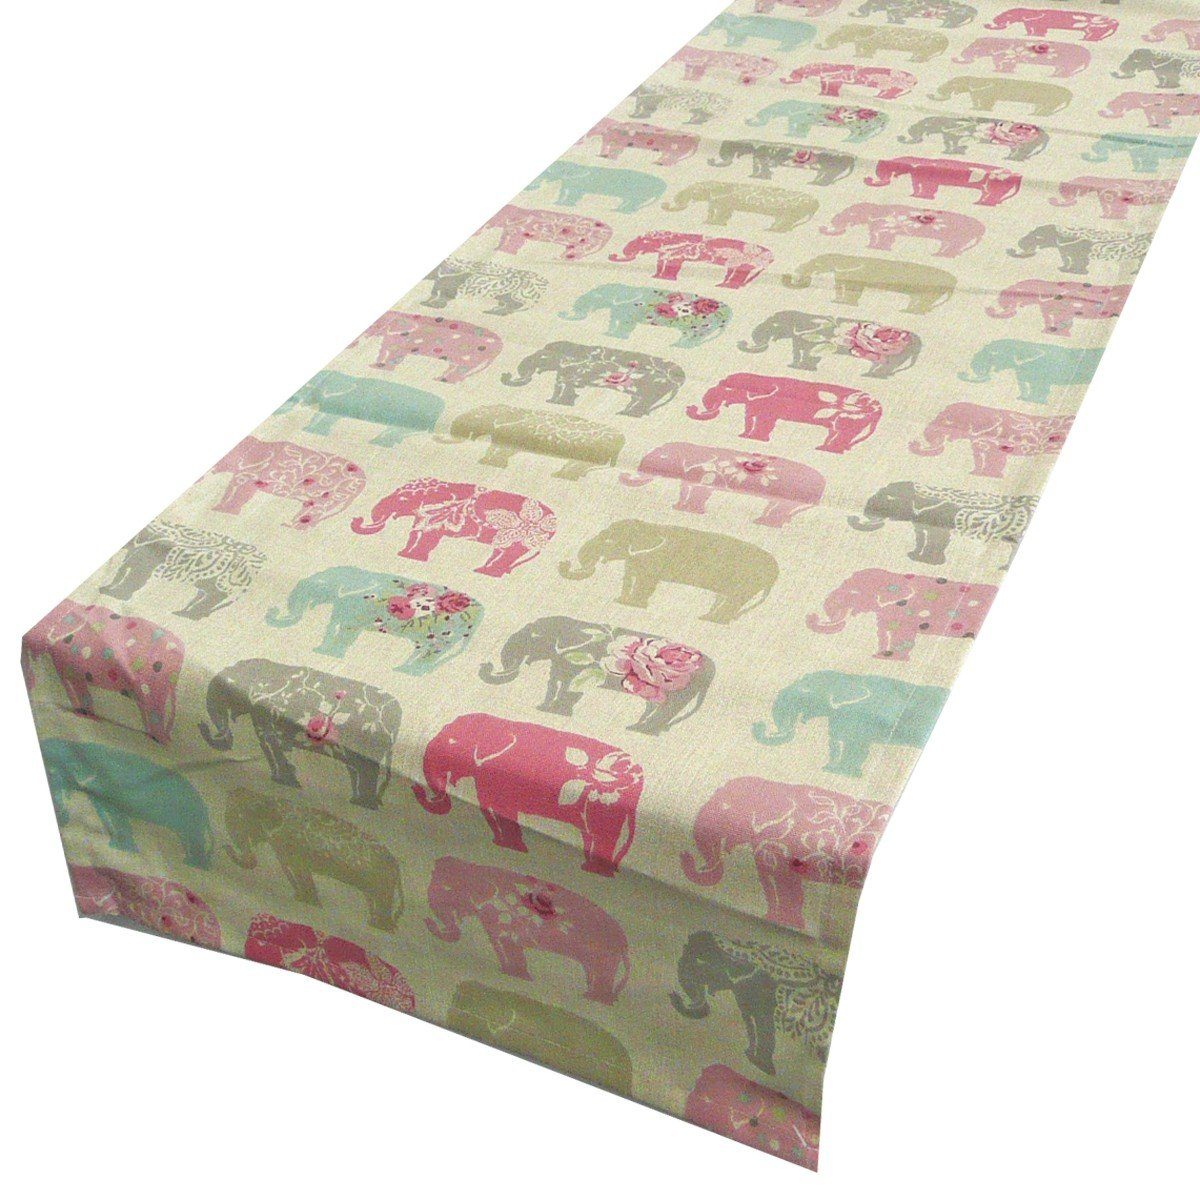 SCHÖNER LEBEN. Tischläufer Tischläufer Elefanten Pastell rosa türkis  40x160cm | Tischläufer